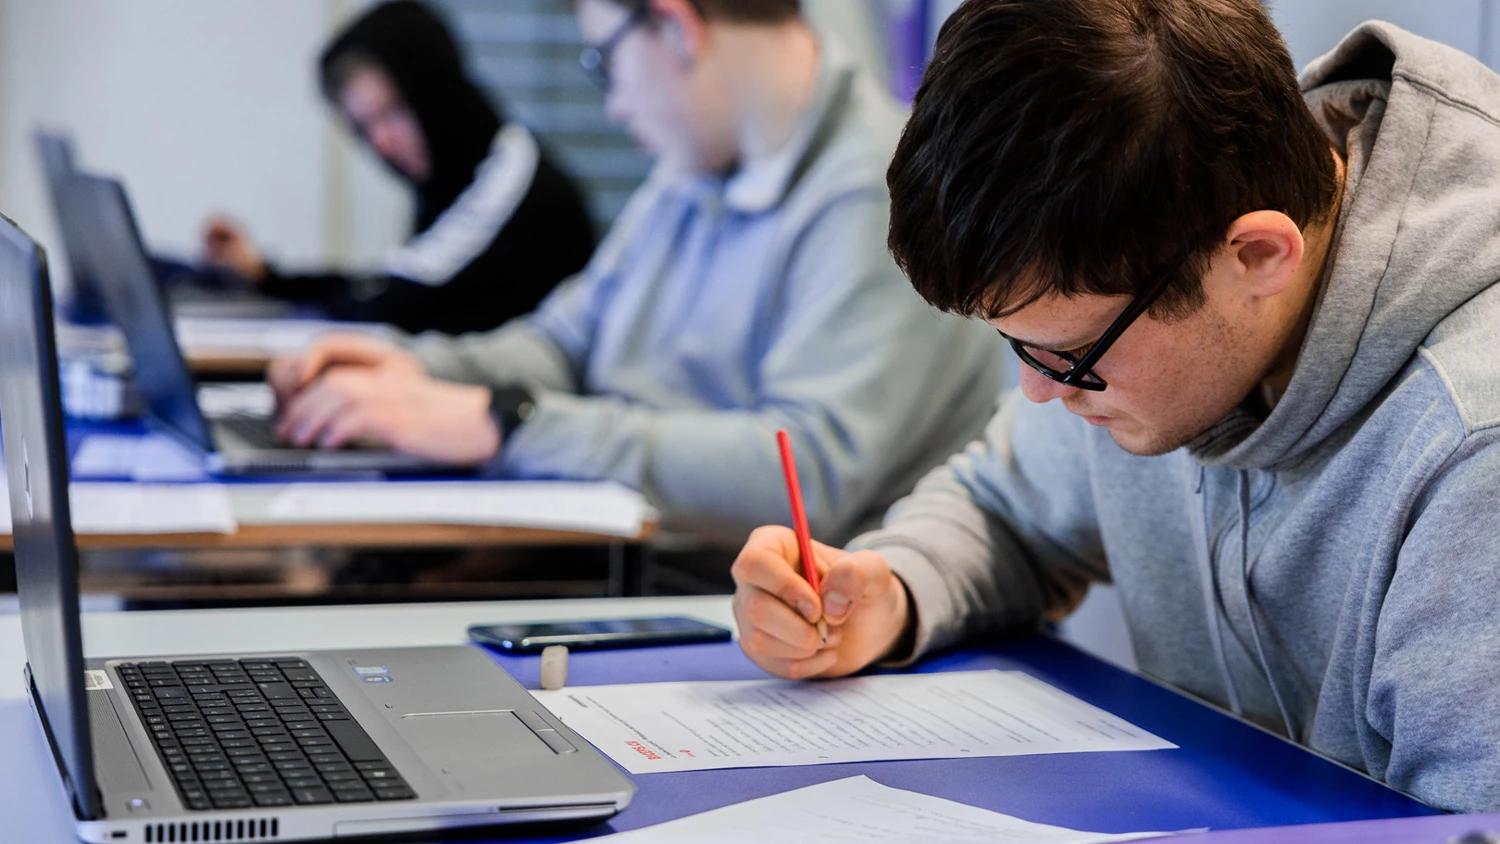 Trois jeunes apprentis qui étudient devant leurs ordinateurs, l'un d'eux écrit sur une feuille.